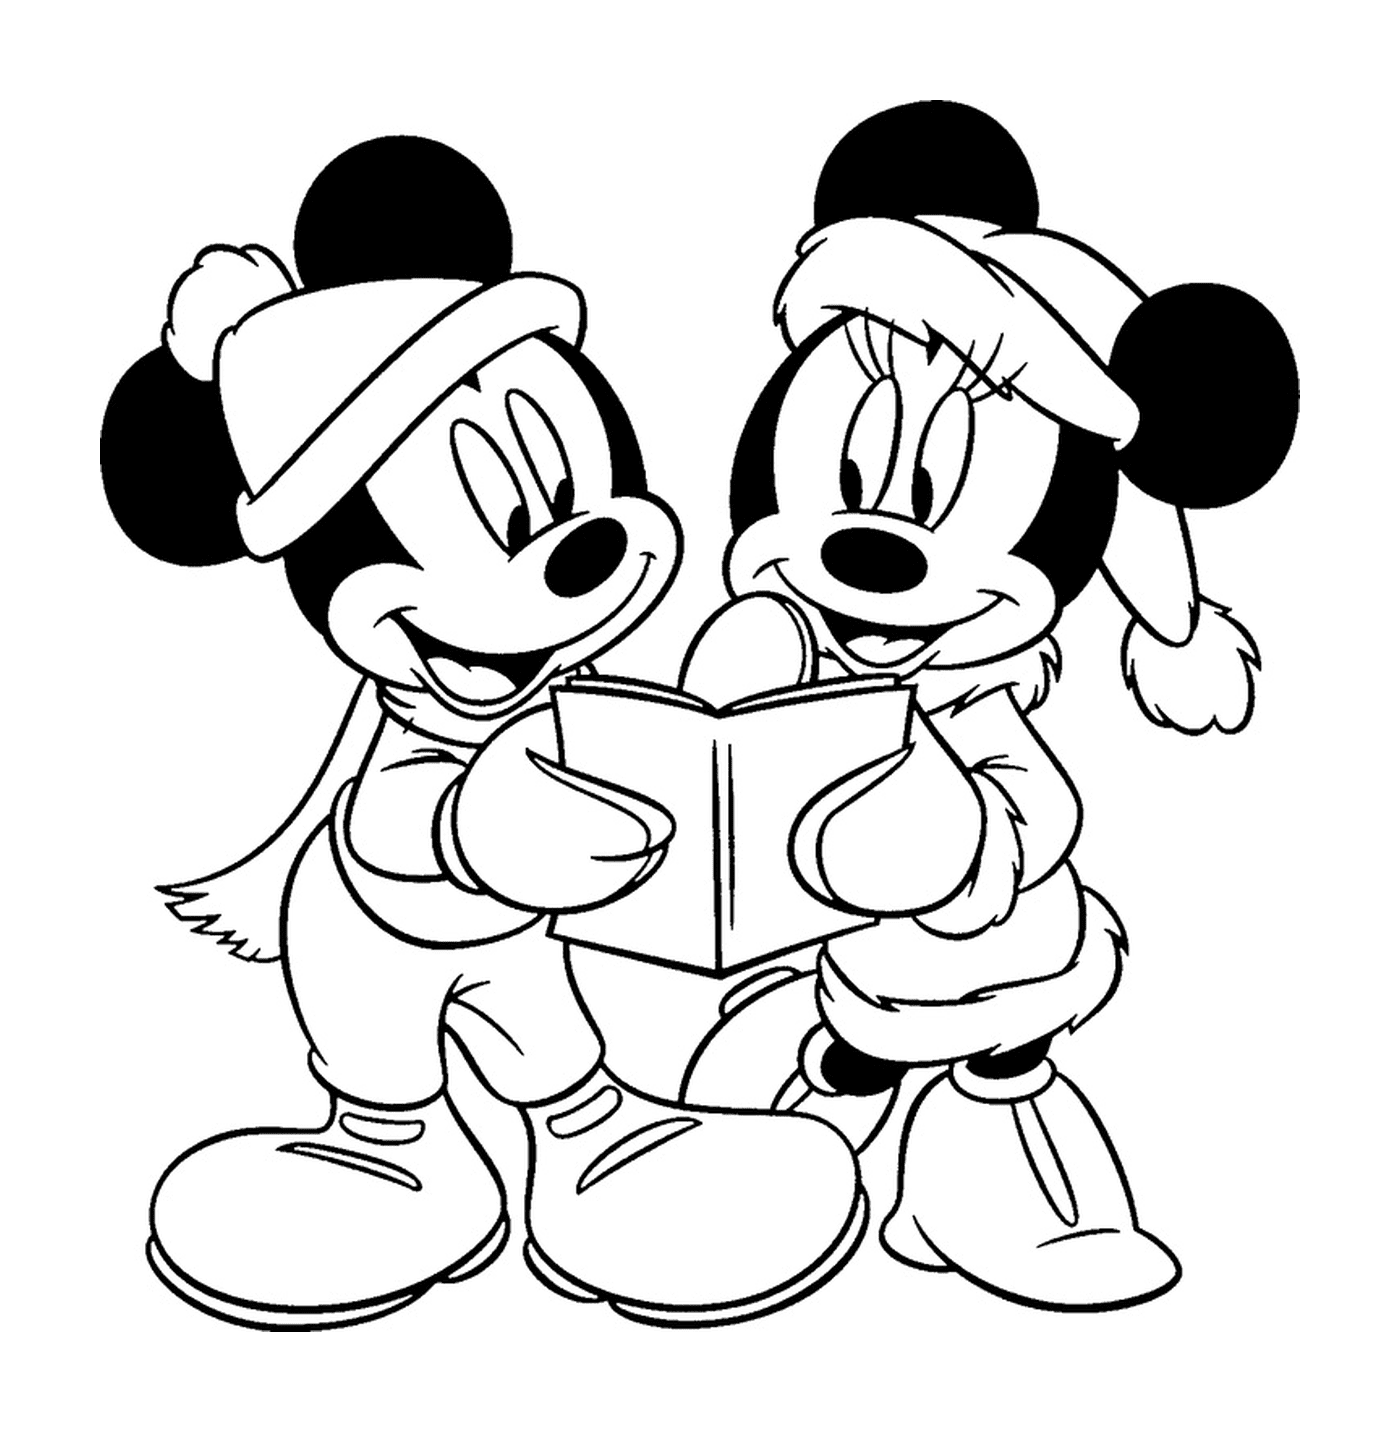  Mickey und Minnie lesen Bücher 